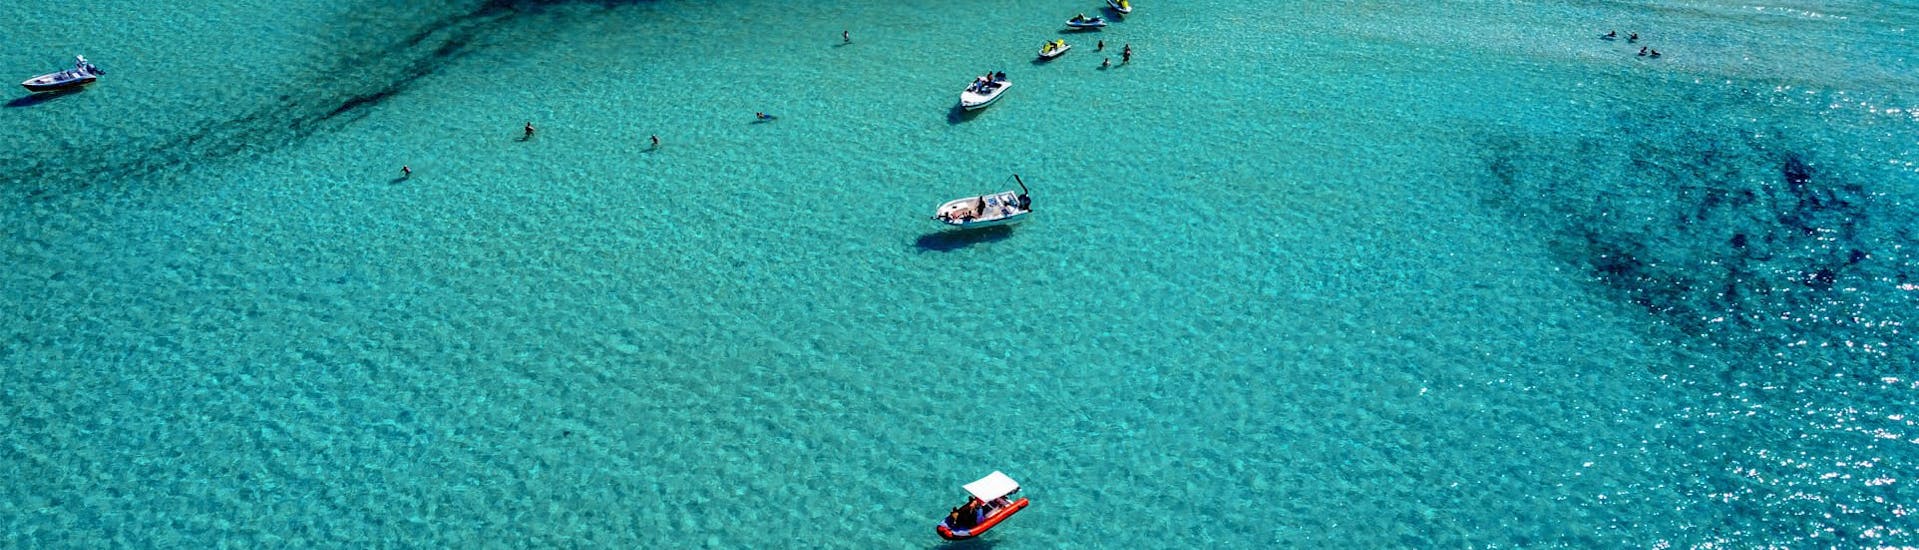 Jetski und Boote auf dem blauen Wasser während der Jetski-Safari nach Balos von Kissamos.